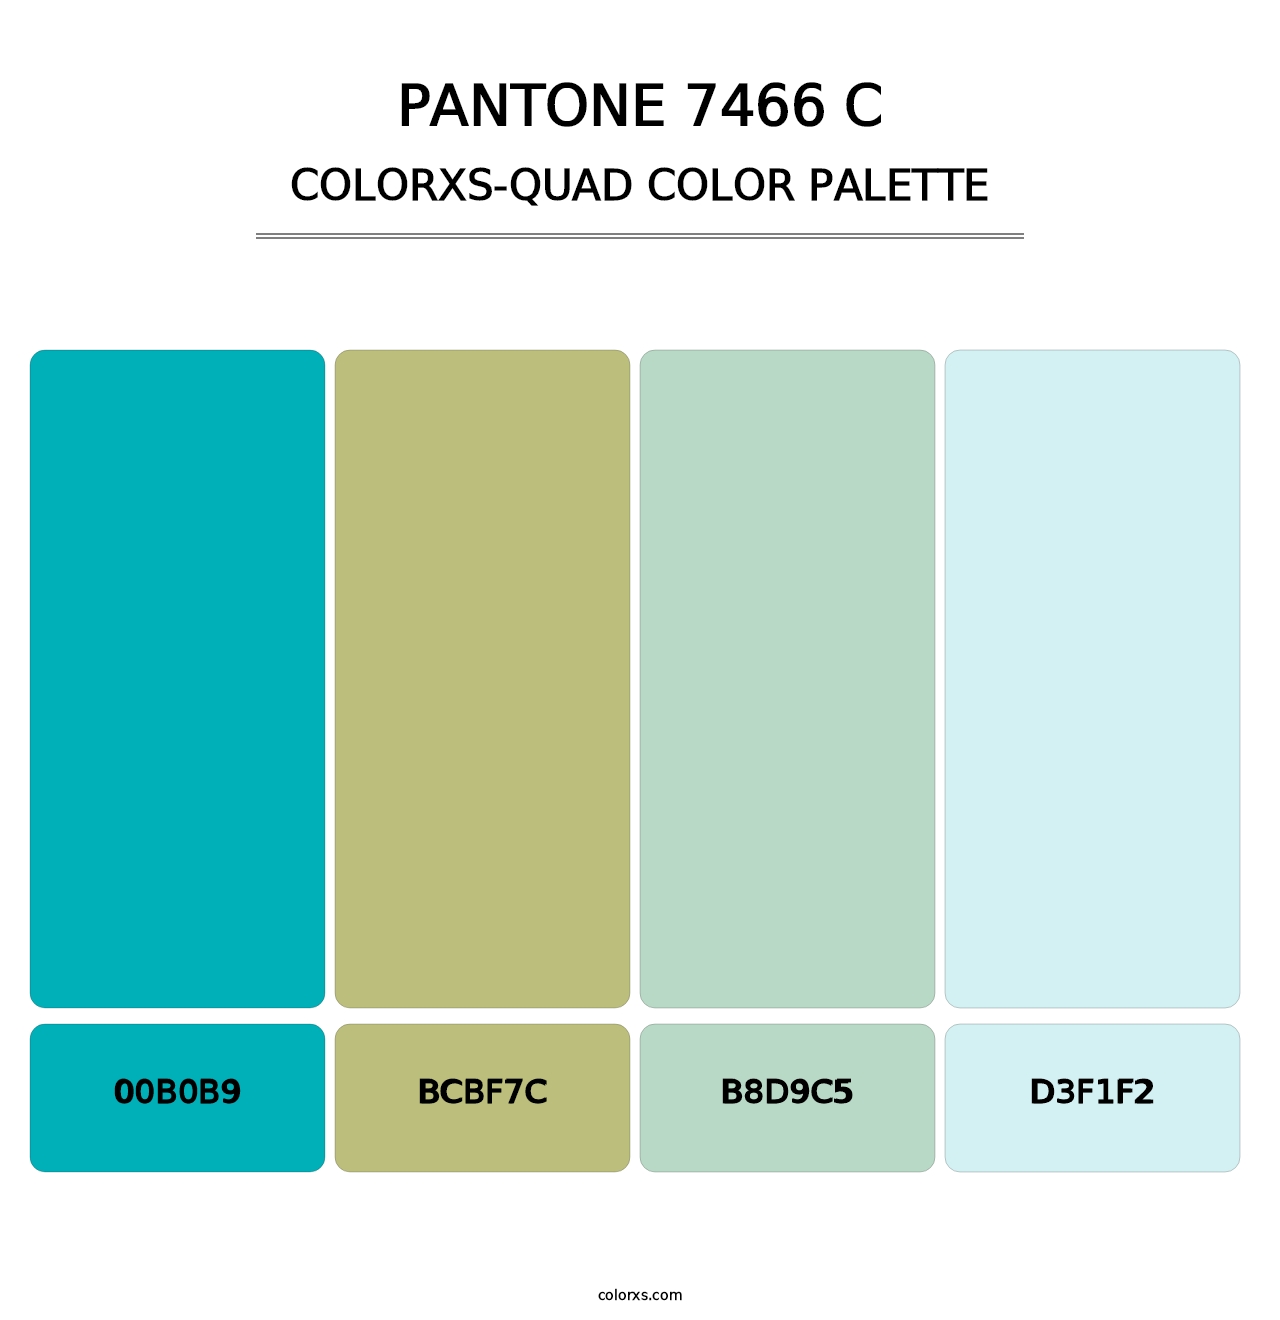 PANTONE 7466 C - Colorxs Quad Palette